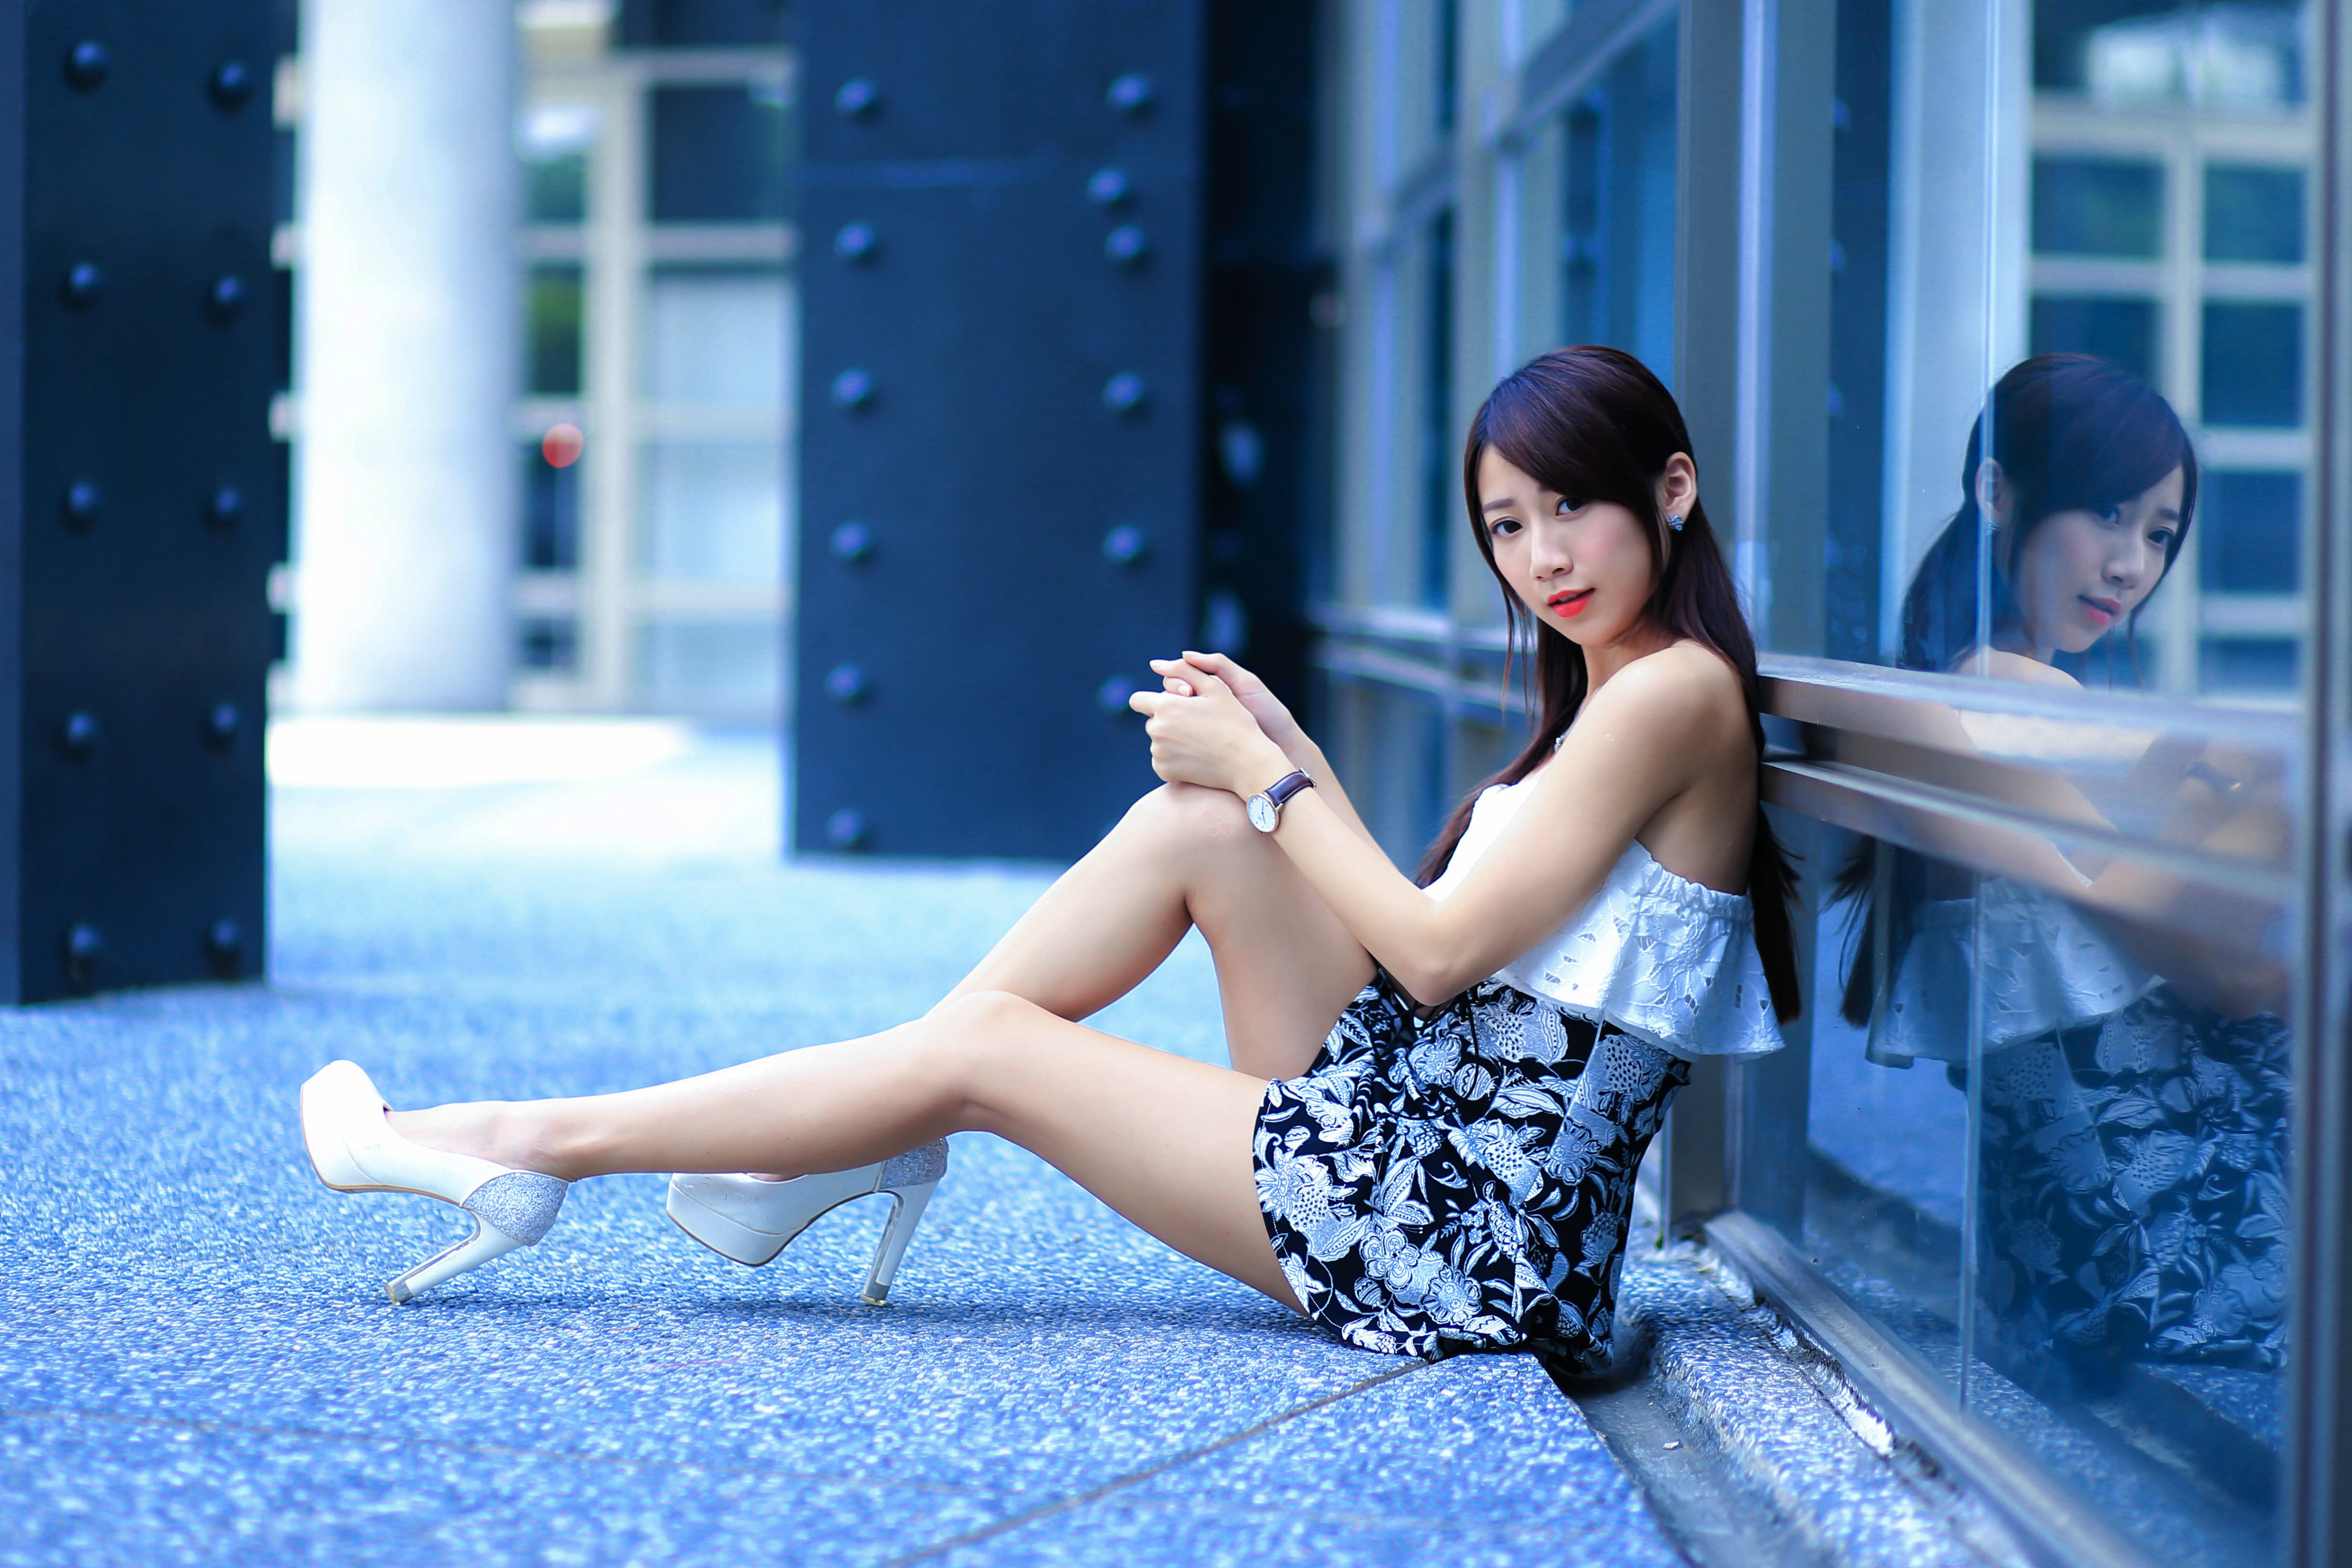 Фотографии молодая женщина Ноги азиатки Сидит платья туфель 3840x2560 девушка Девушки молодые женщины ног Азиаты азиатка сидя сидящие Платье Туфли туфлях